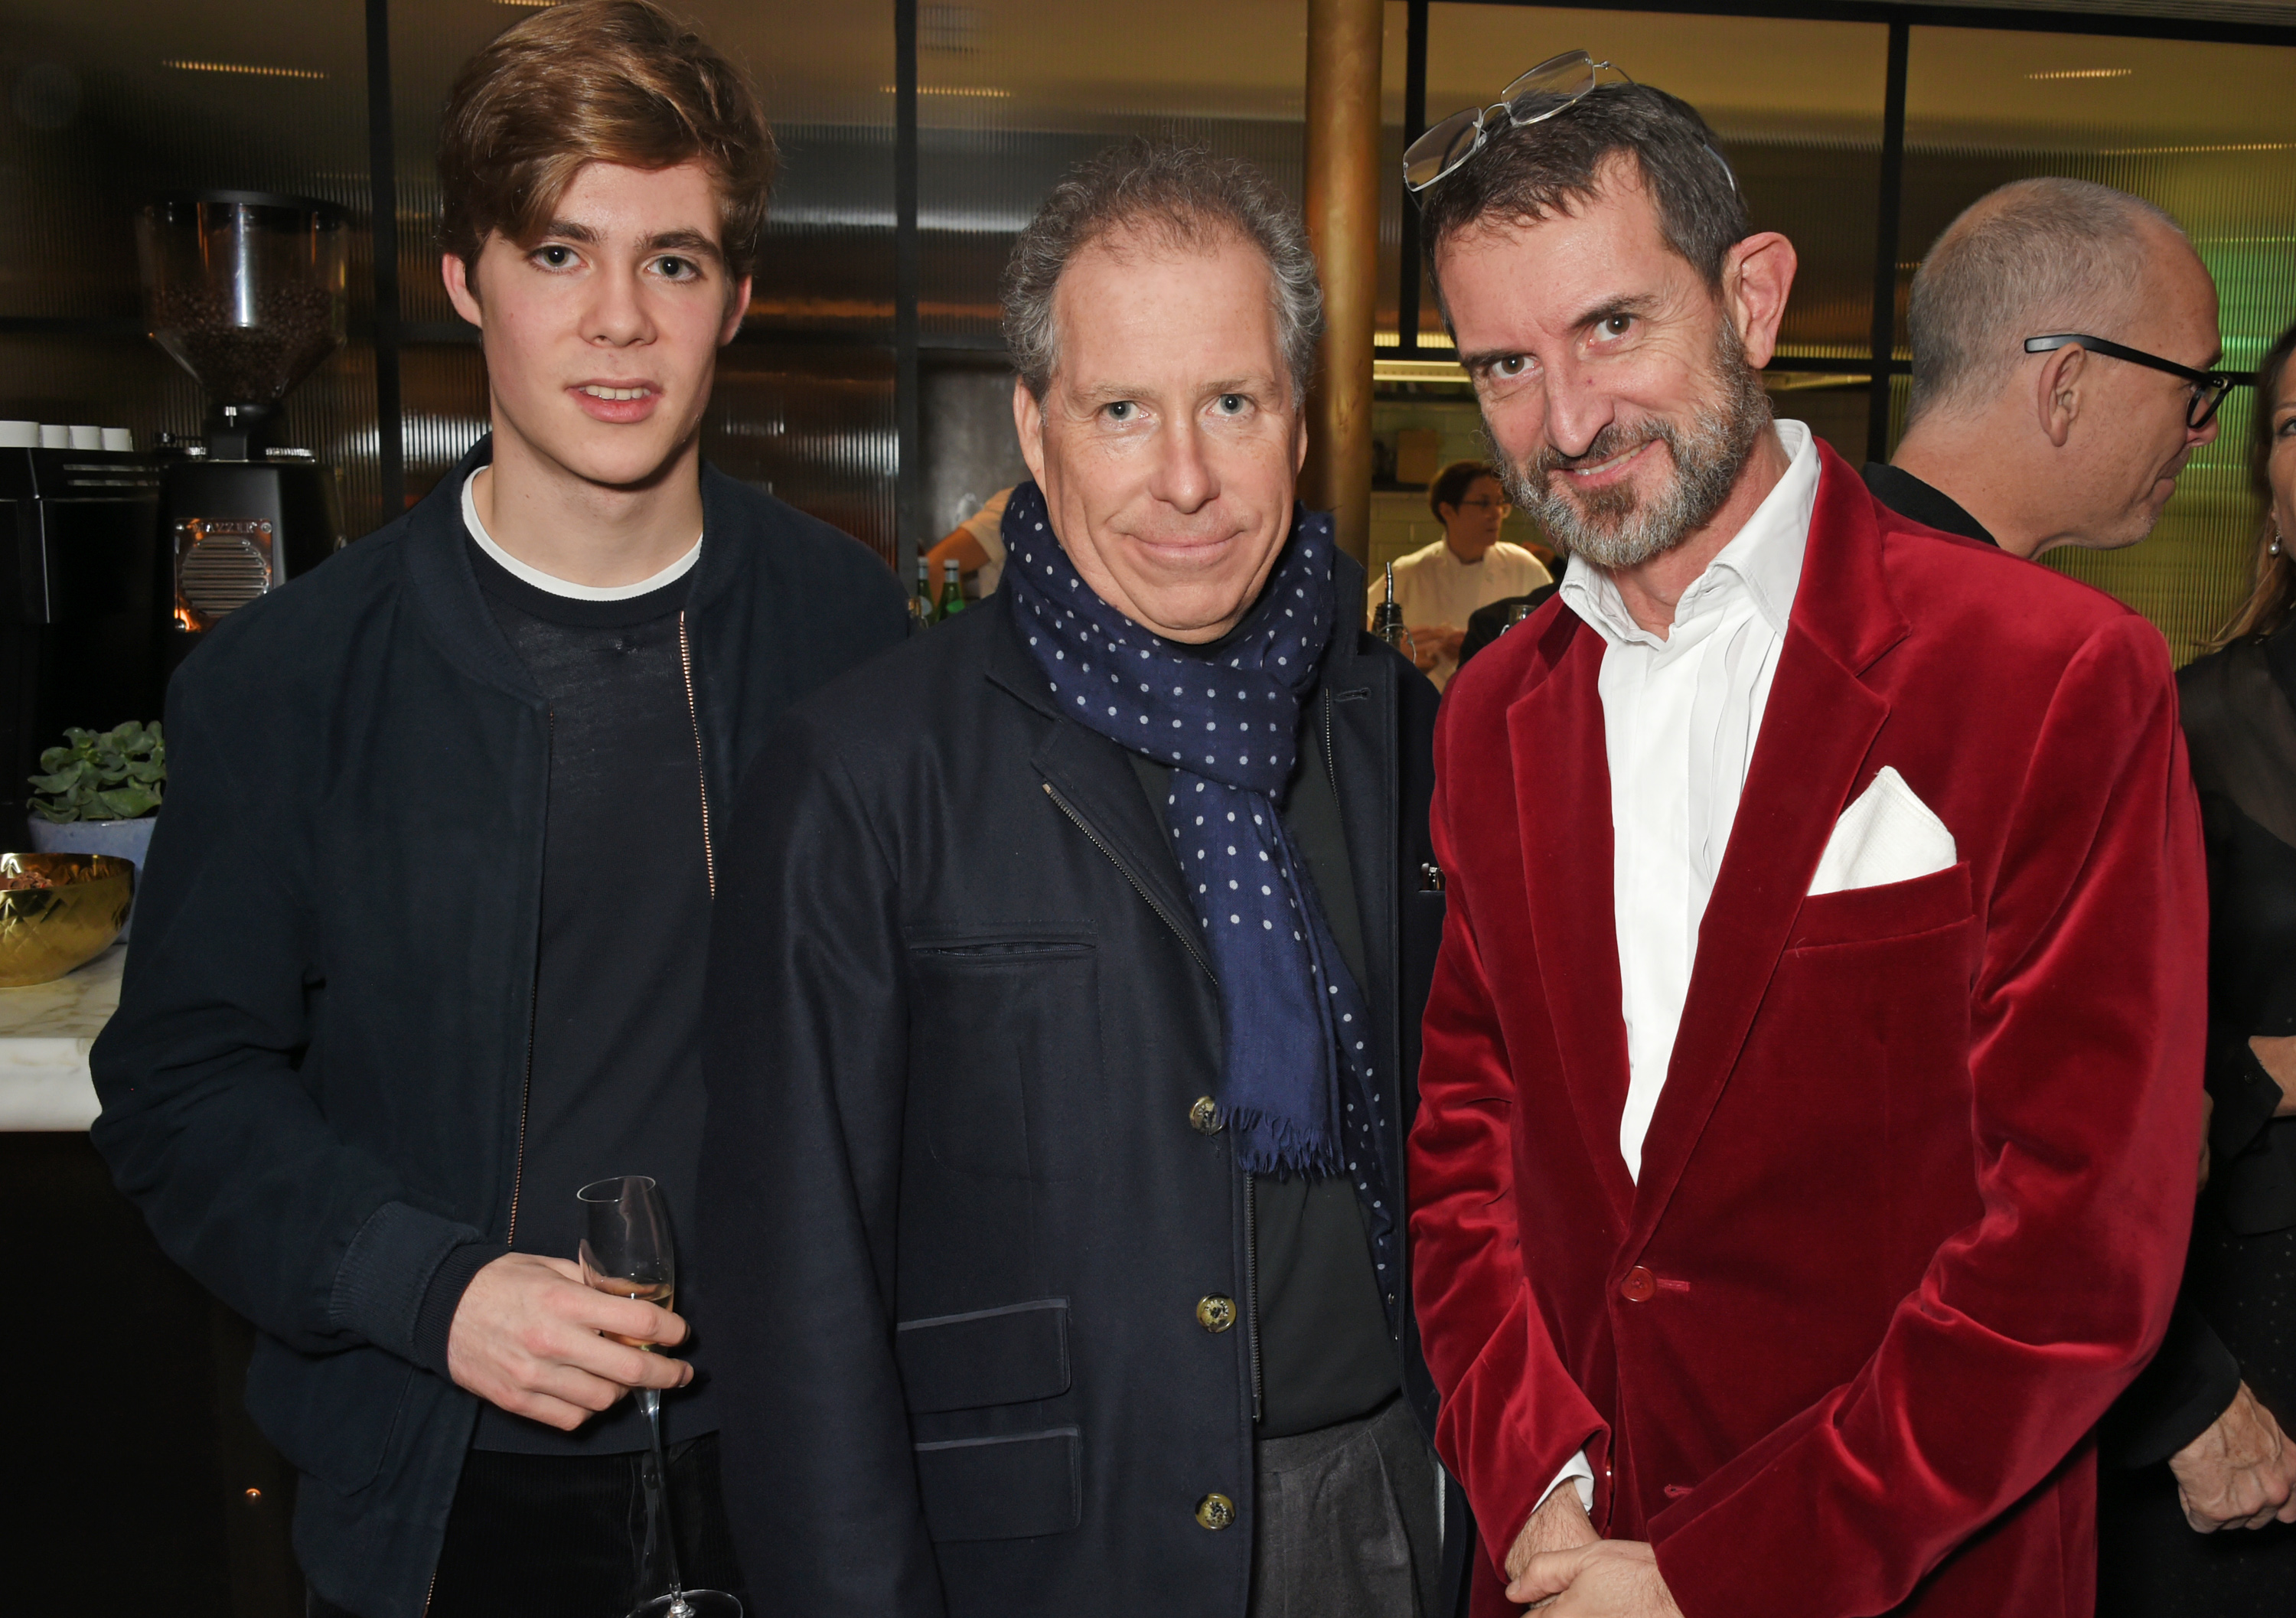 Charles Armstrong-Jones, David Armstrong-Jones et Manfredi della Gherardesca assistent à la fête du 18e anniversaire d'Alexander Dundas le 16 décembre 2017 à Londres, en Angleterre. | Source : Getty Images